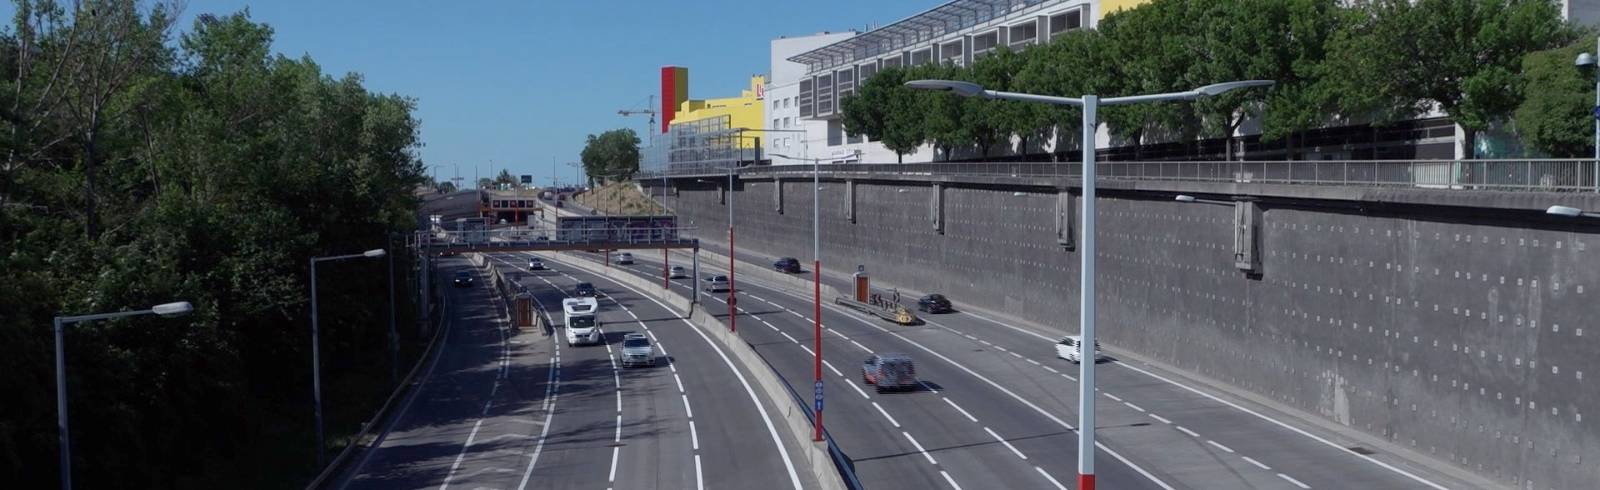 VCÖ: Weniger Autos auf Wiens Autobahnen